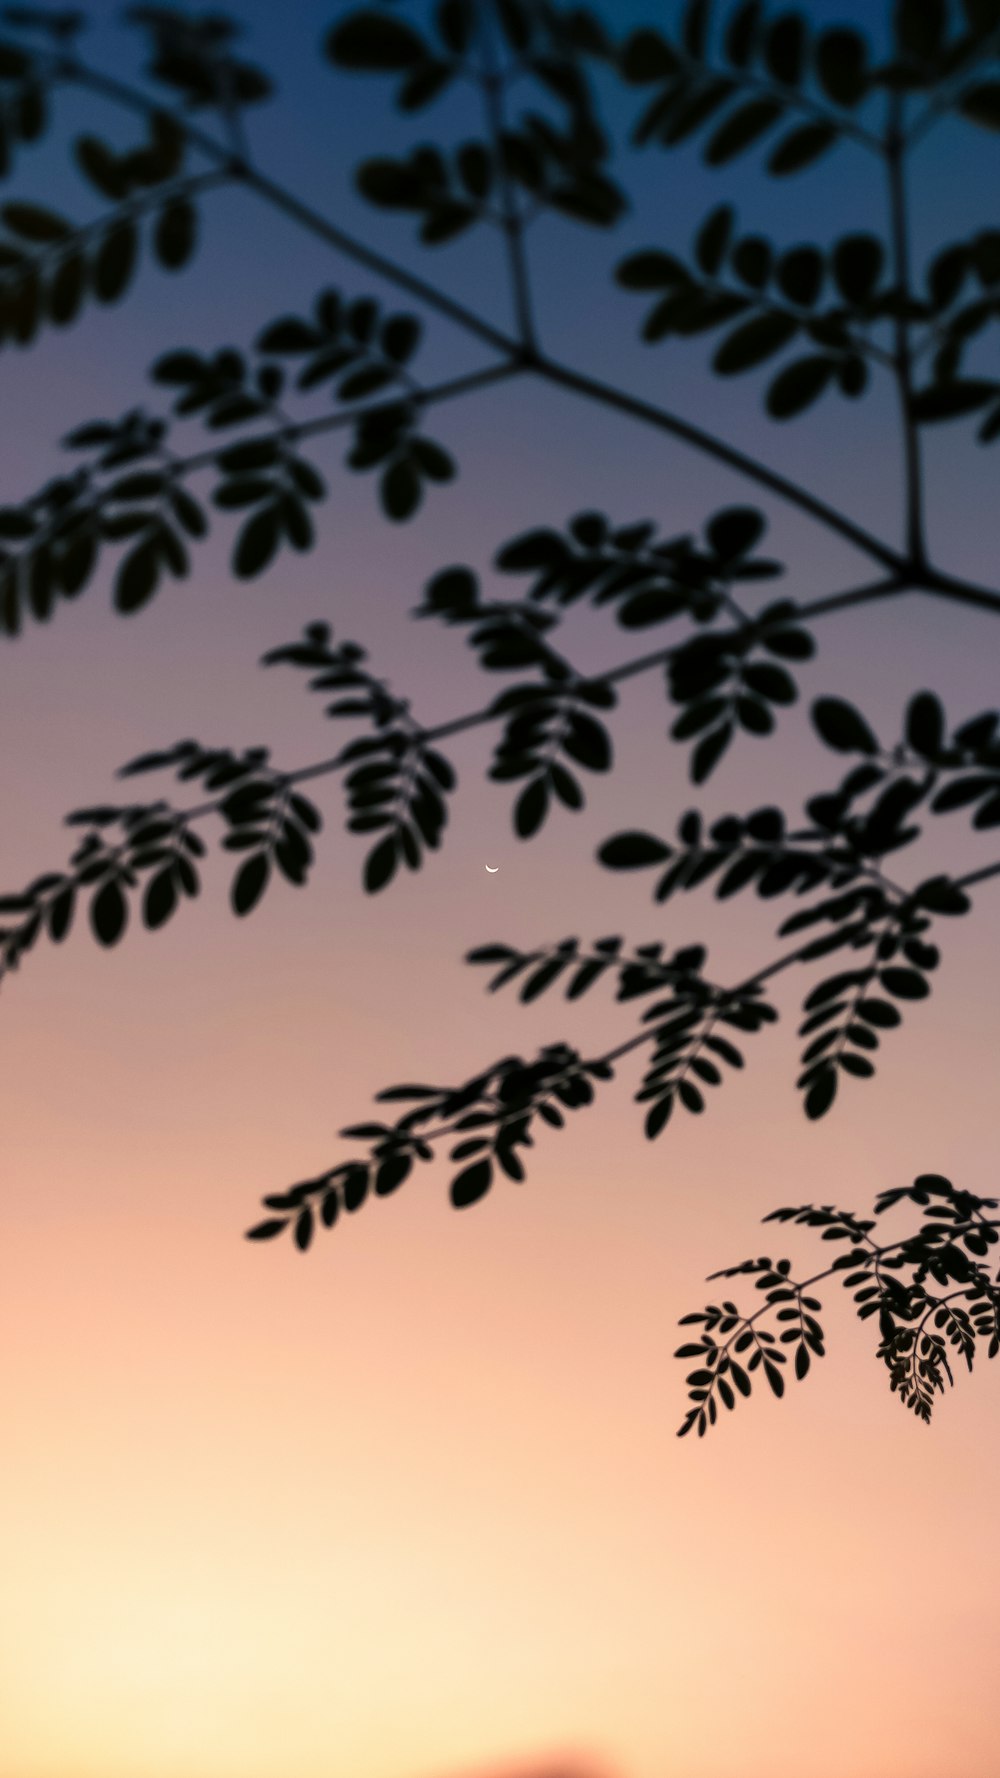 la silueta de la rama de un árbol contra el cielo de una puesta de sol